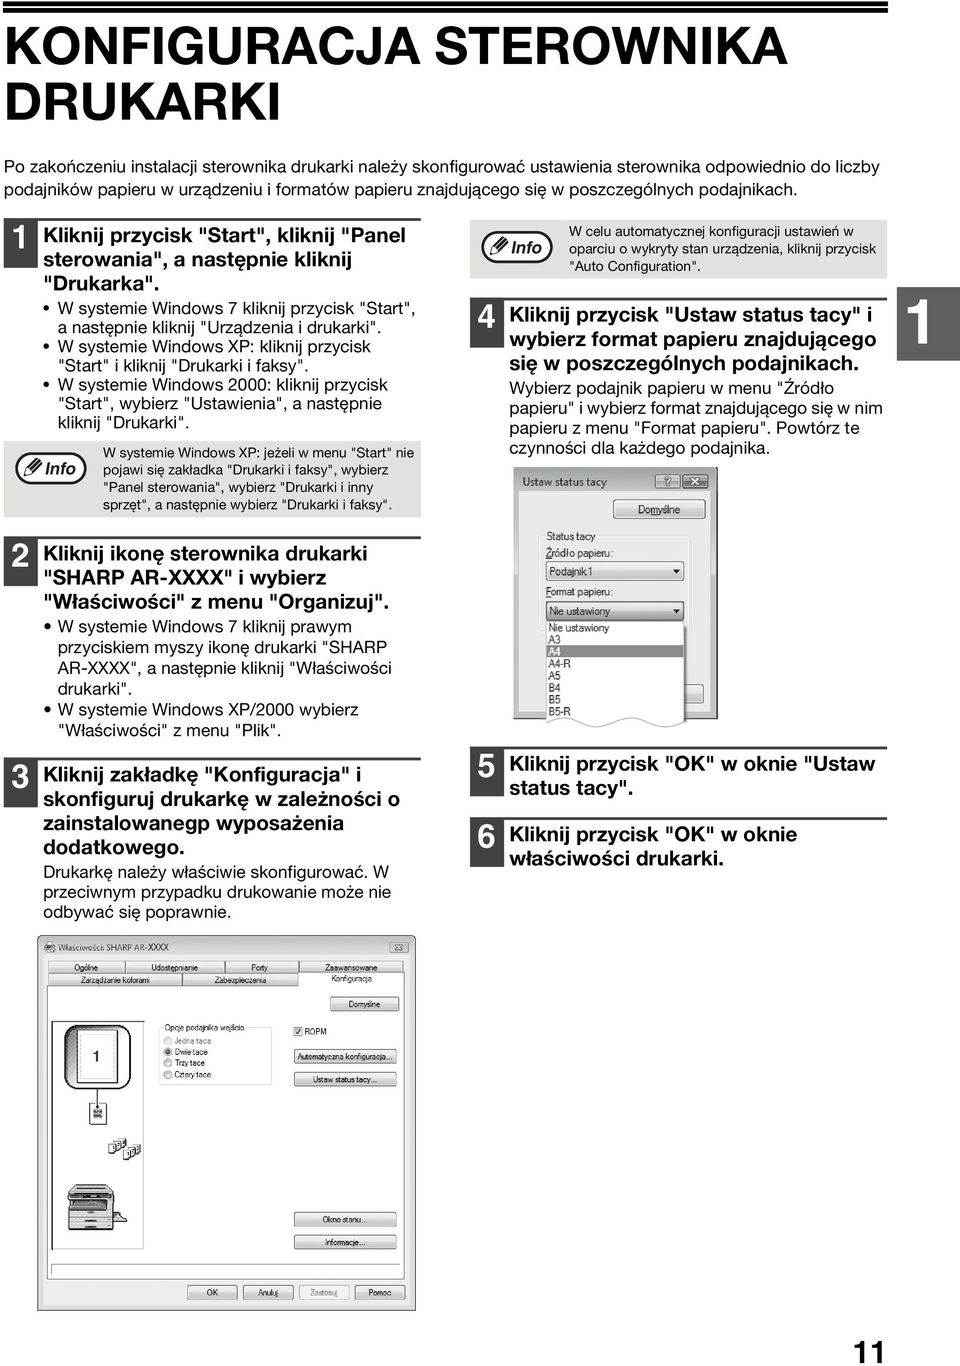 W systemie Windows 7 kliknij przycisk "Start", a następnie kliknij "Urządzenia i drukarki". W systemie Windows XP: kliknij przycisk "Start" i kliknij "Drukarki i faksy".